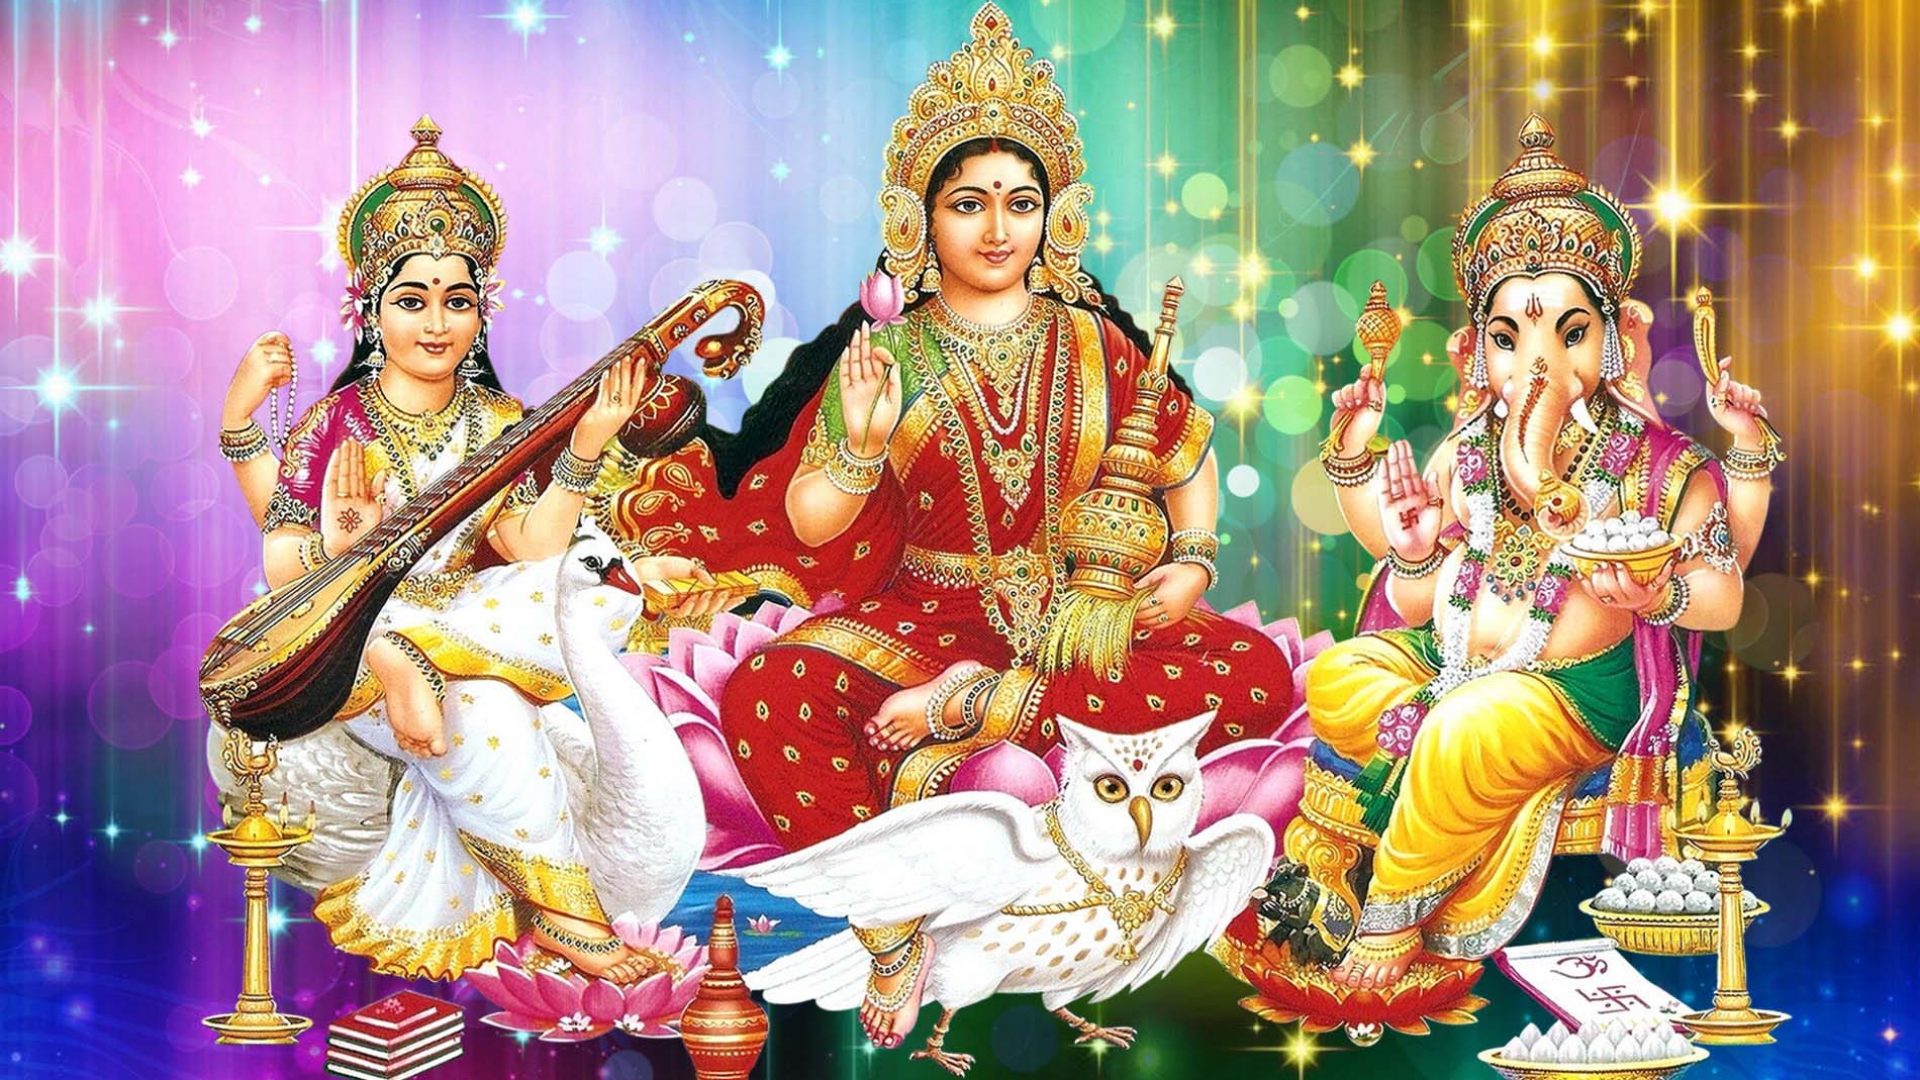 Lakshmi Ganesh Saraswati Desktop Wallpapers Hd - God HD Wallpapers